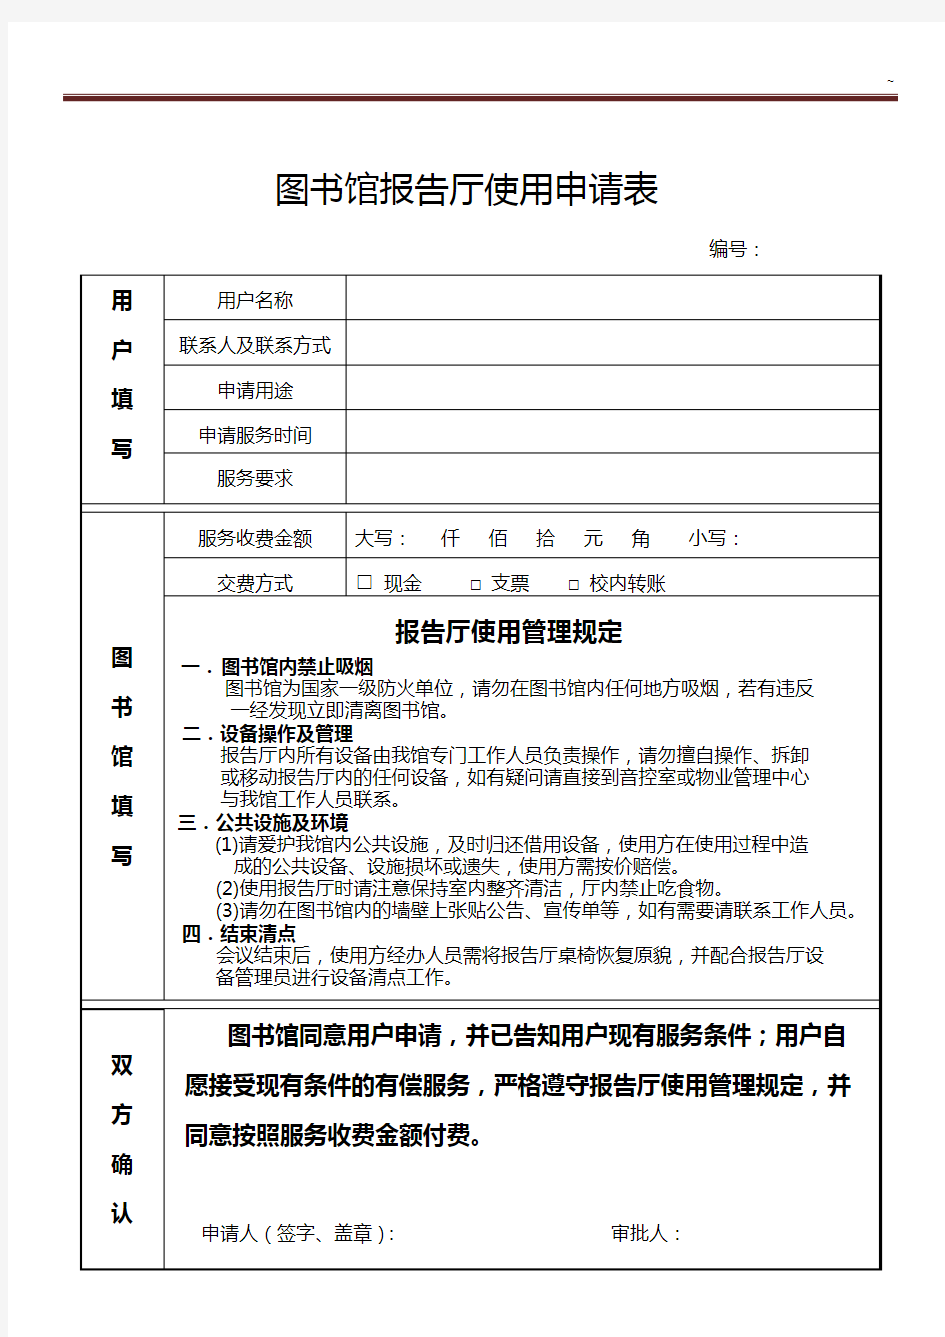 哈尔滨工程大学图书馆服务项目开发申请表